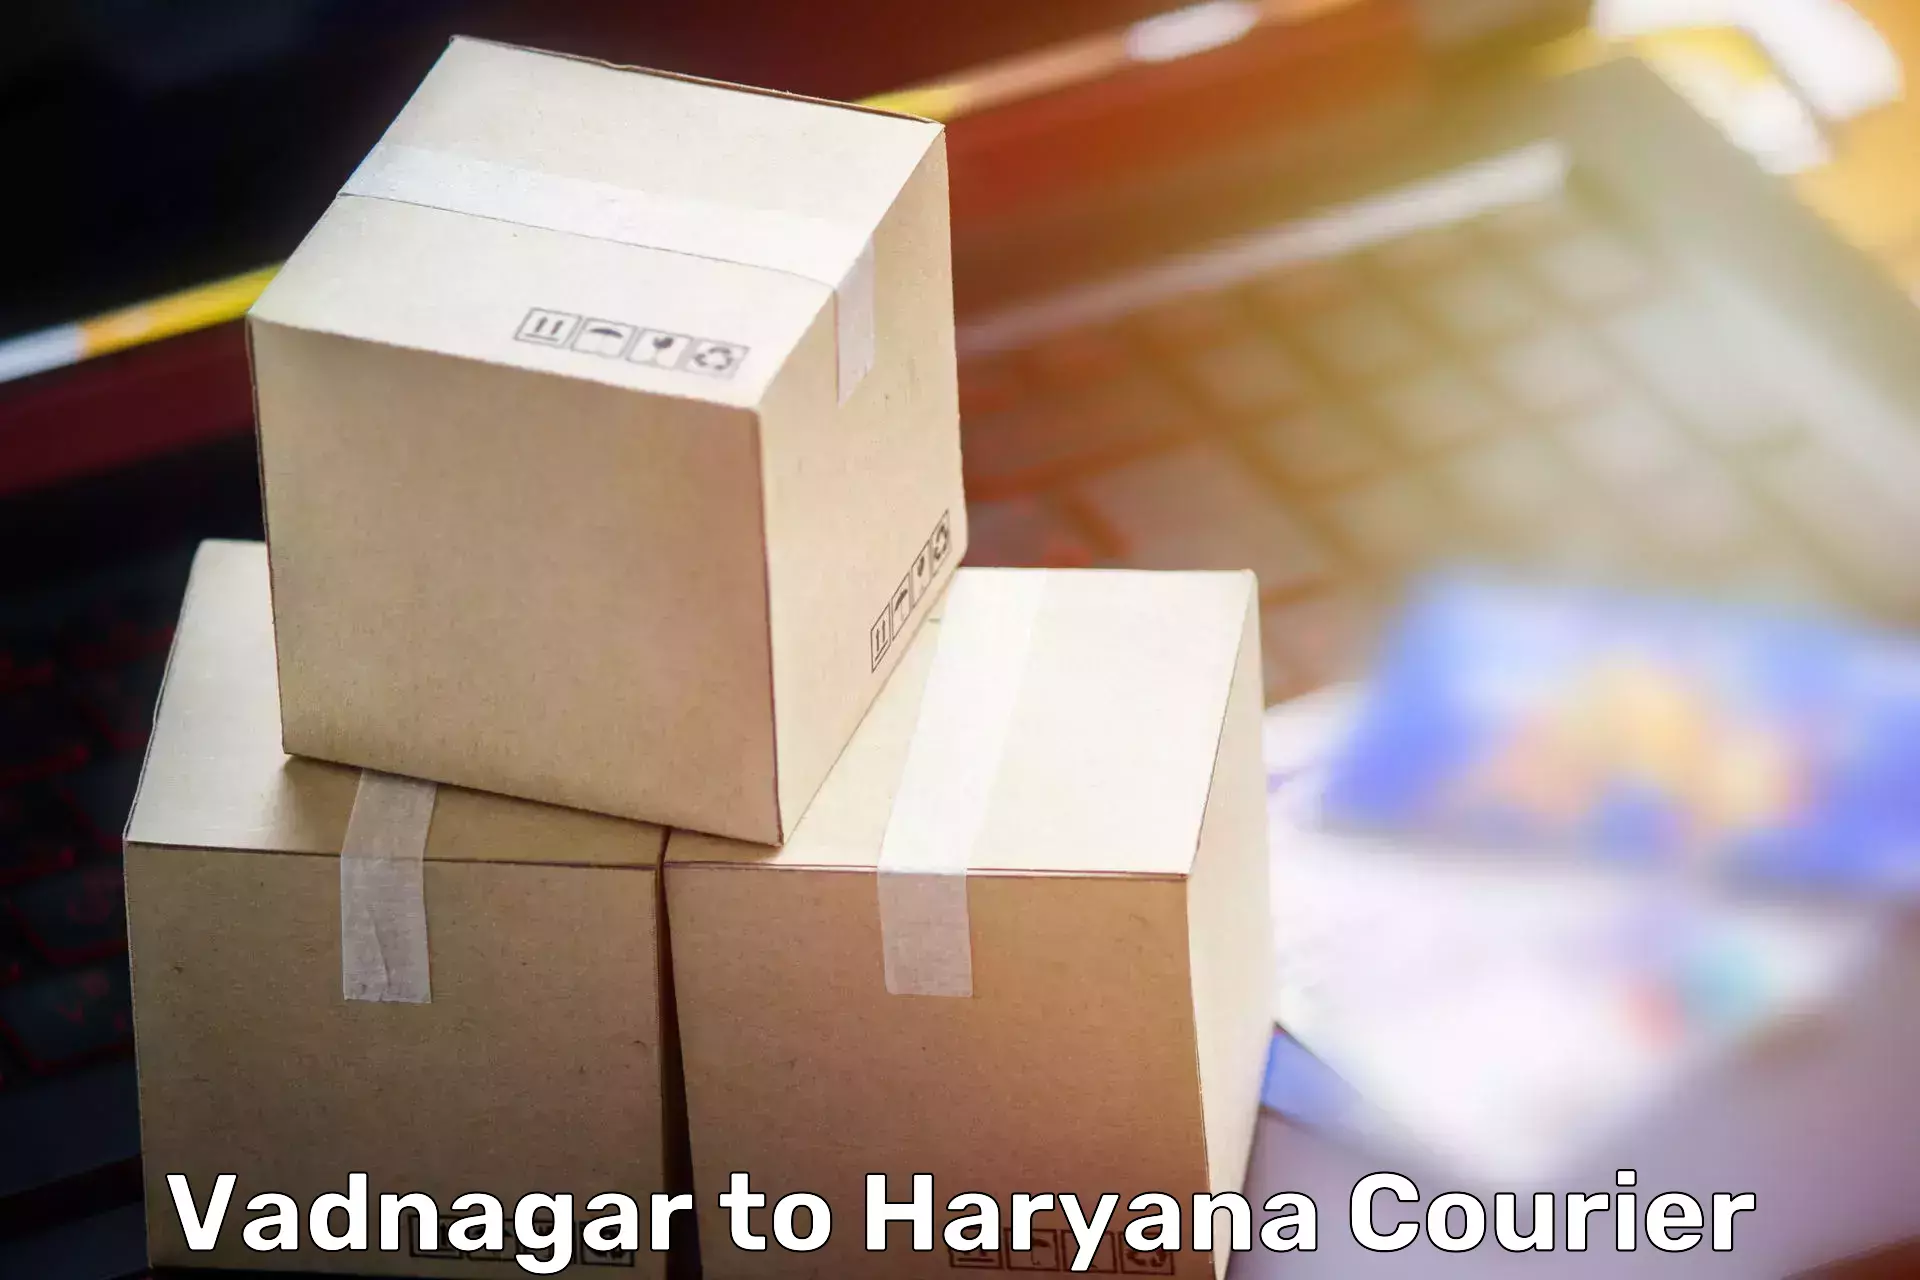 Trusted moving company Vadnagar to Haryana